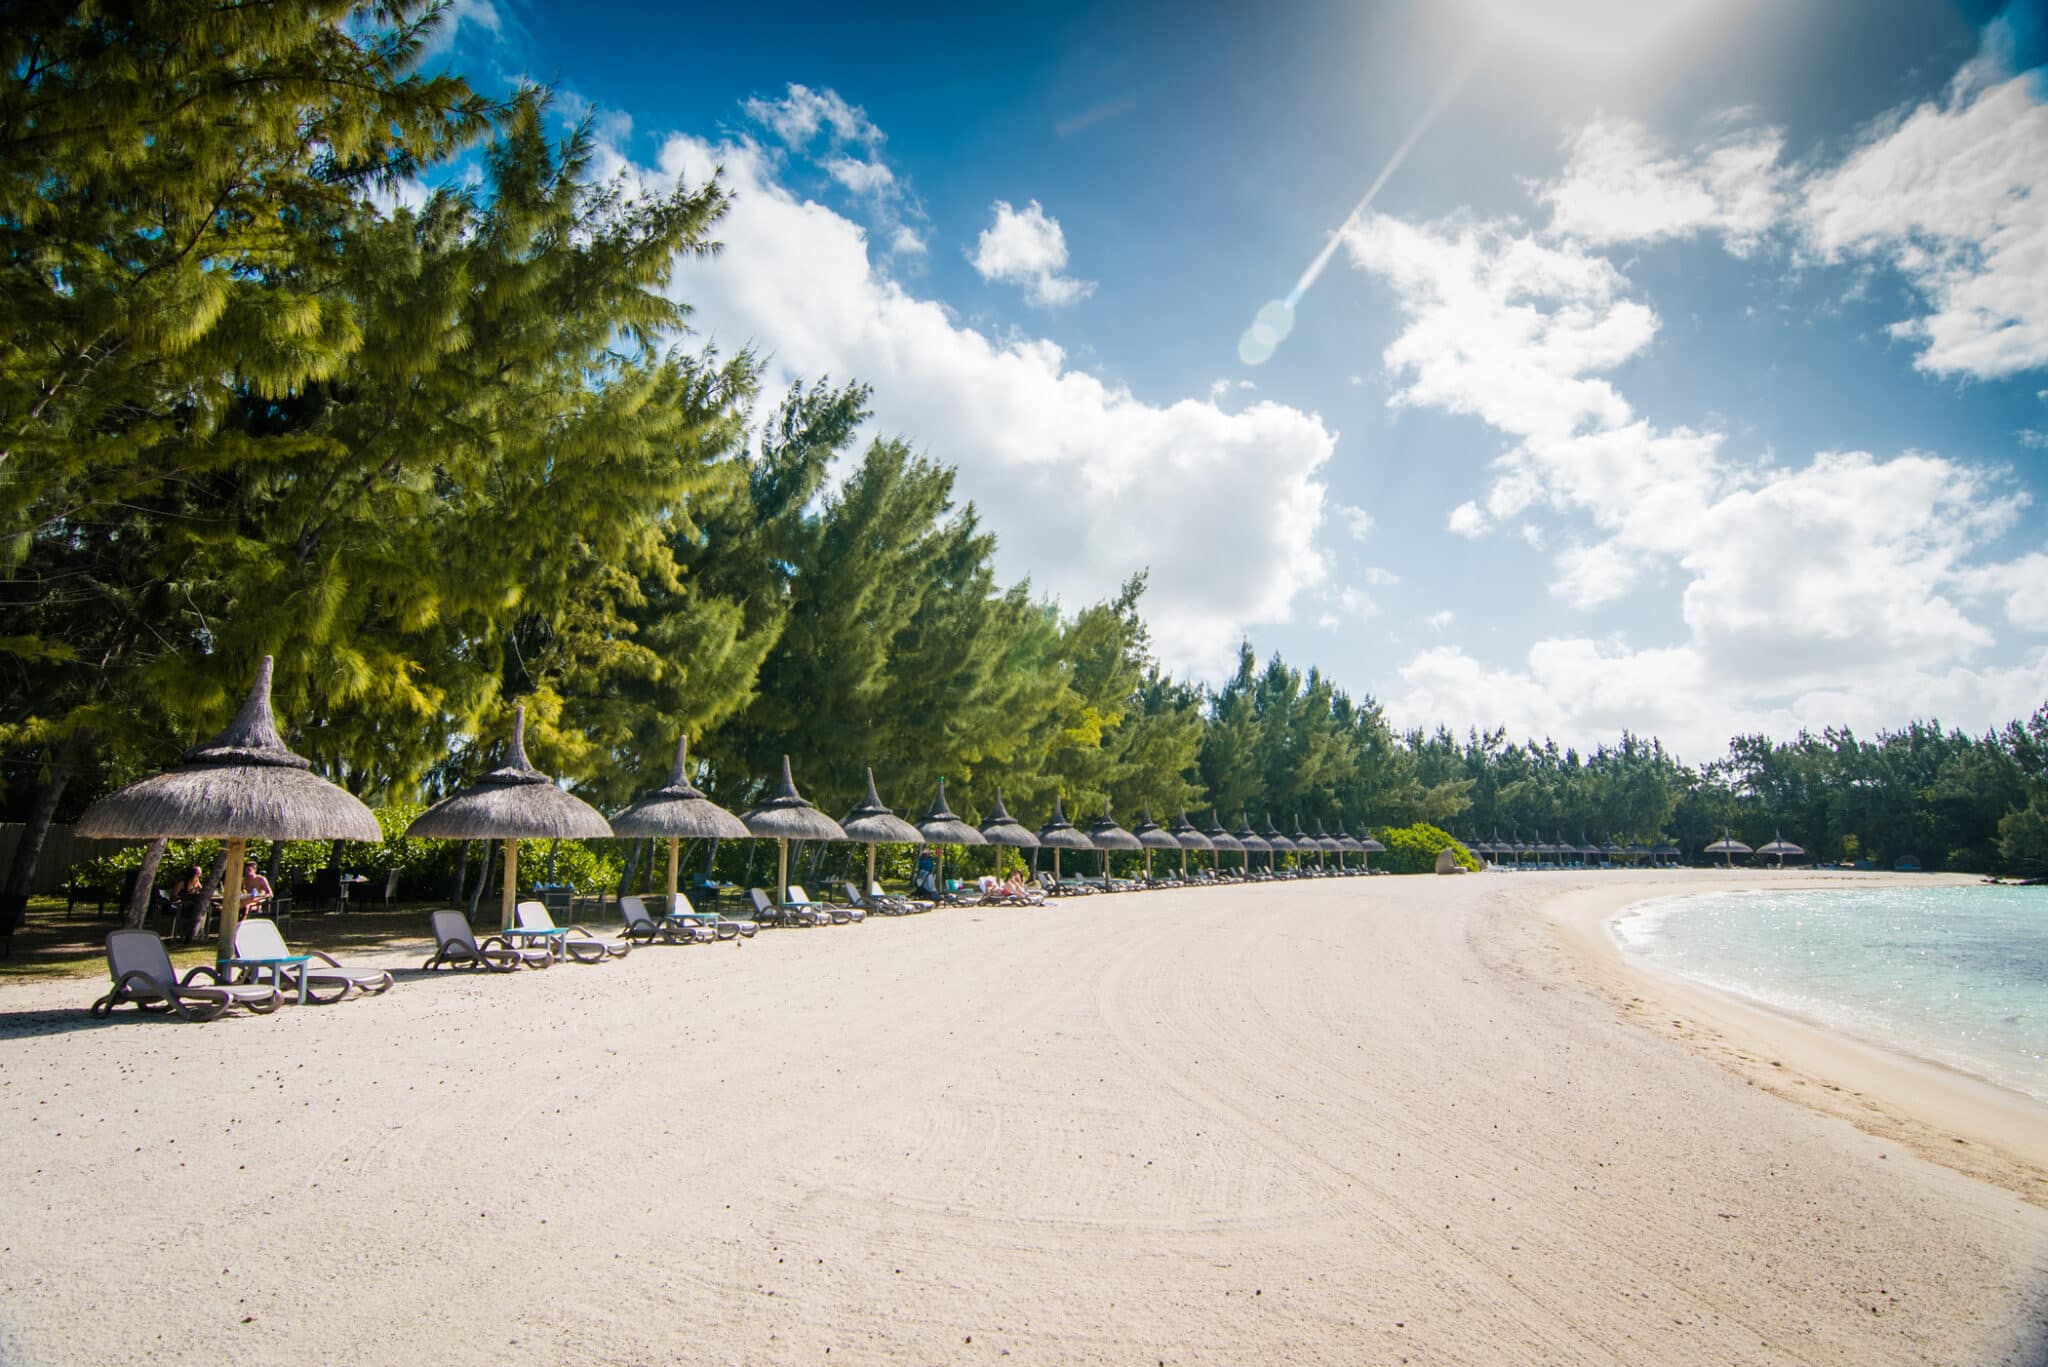 Готель розташований на одному з найбільш протяжних пляжів Маврикія з білосніжним піском (ідеальне місце для незабутніх фото та проведення урочистих подій).